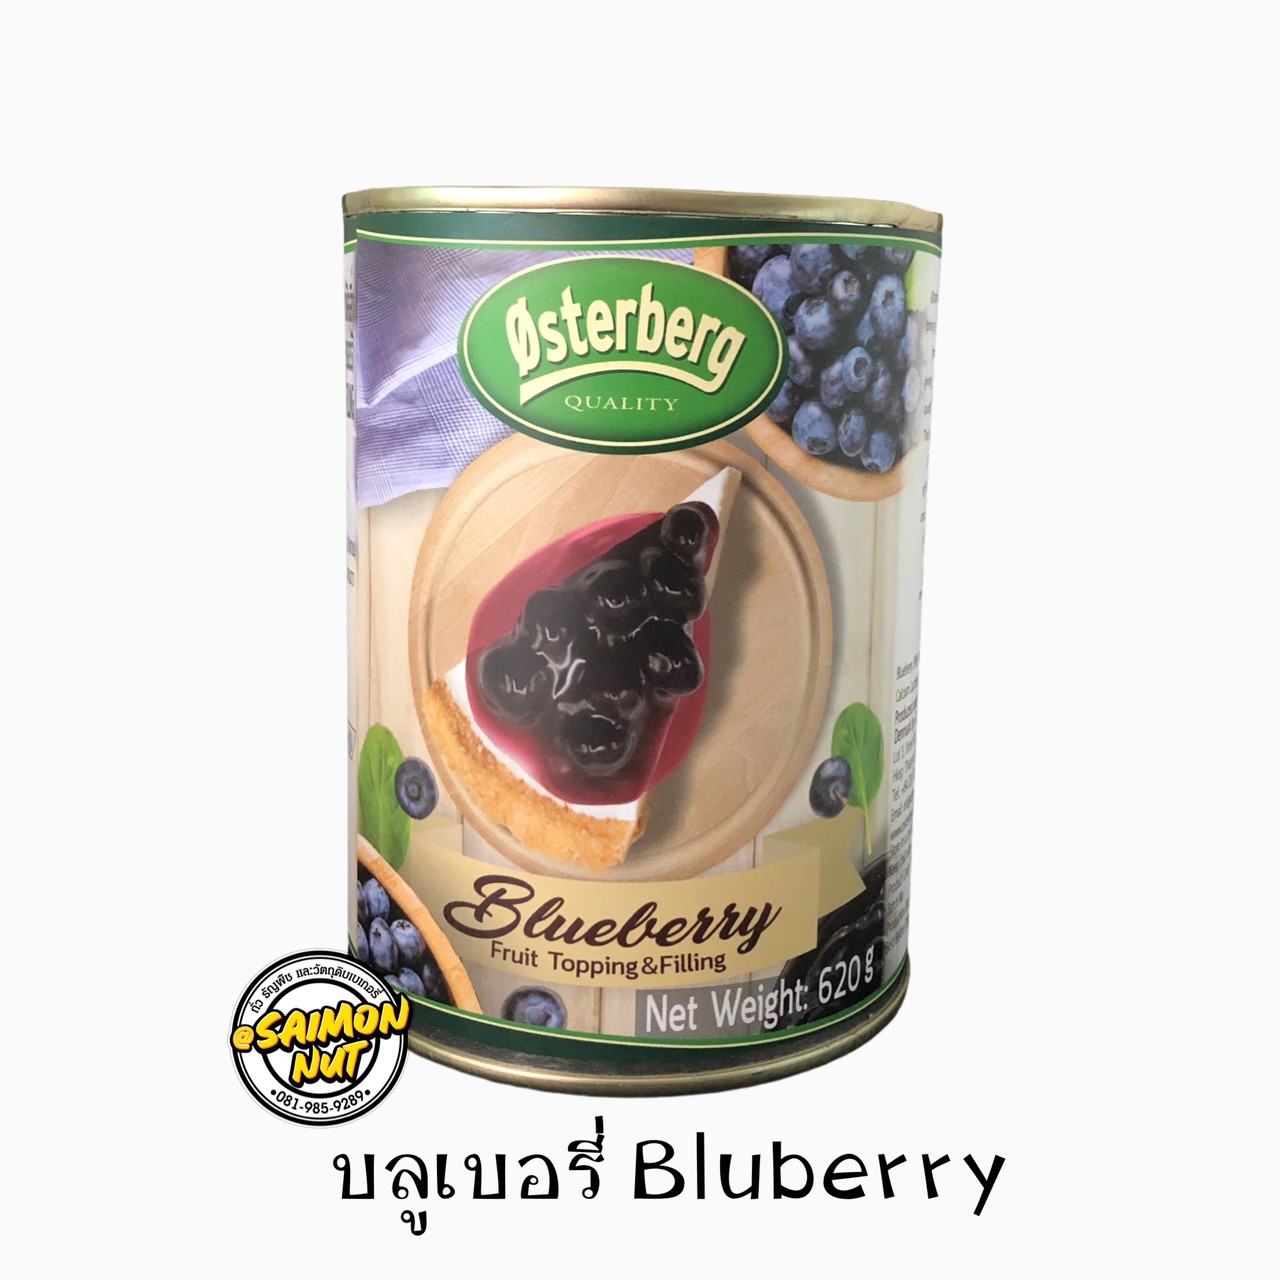 บลูเบอรี่ ฟรุ๊ตท็อปปิ้งกระป๋อง Blueberry Friut Topping มีเนื้อผลไม้ขนาดบรรจุ620กรัม สำหรับทำเมนูเบเกอรี่ต่างๆ ชีสเค้ก เครปเค้ก